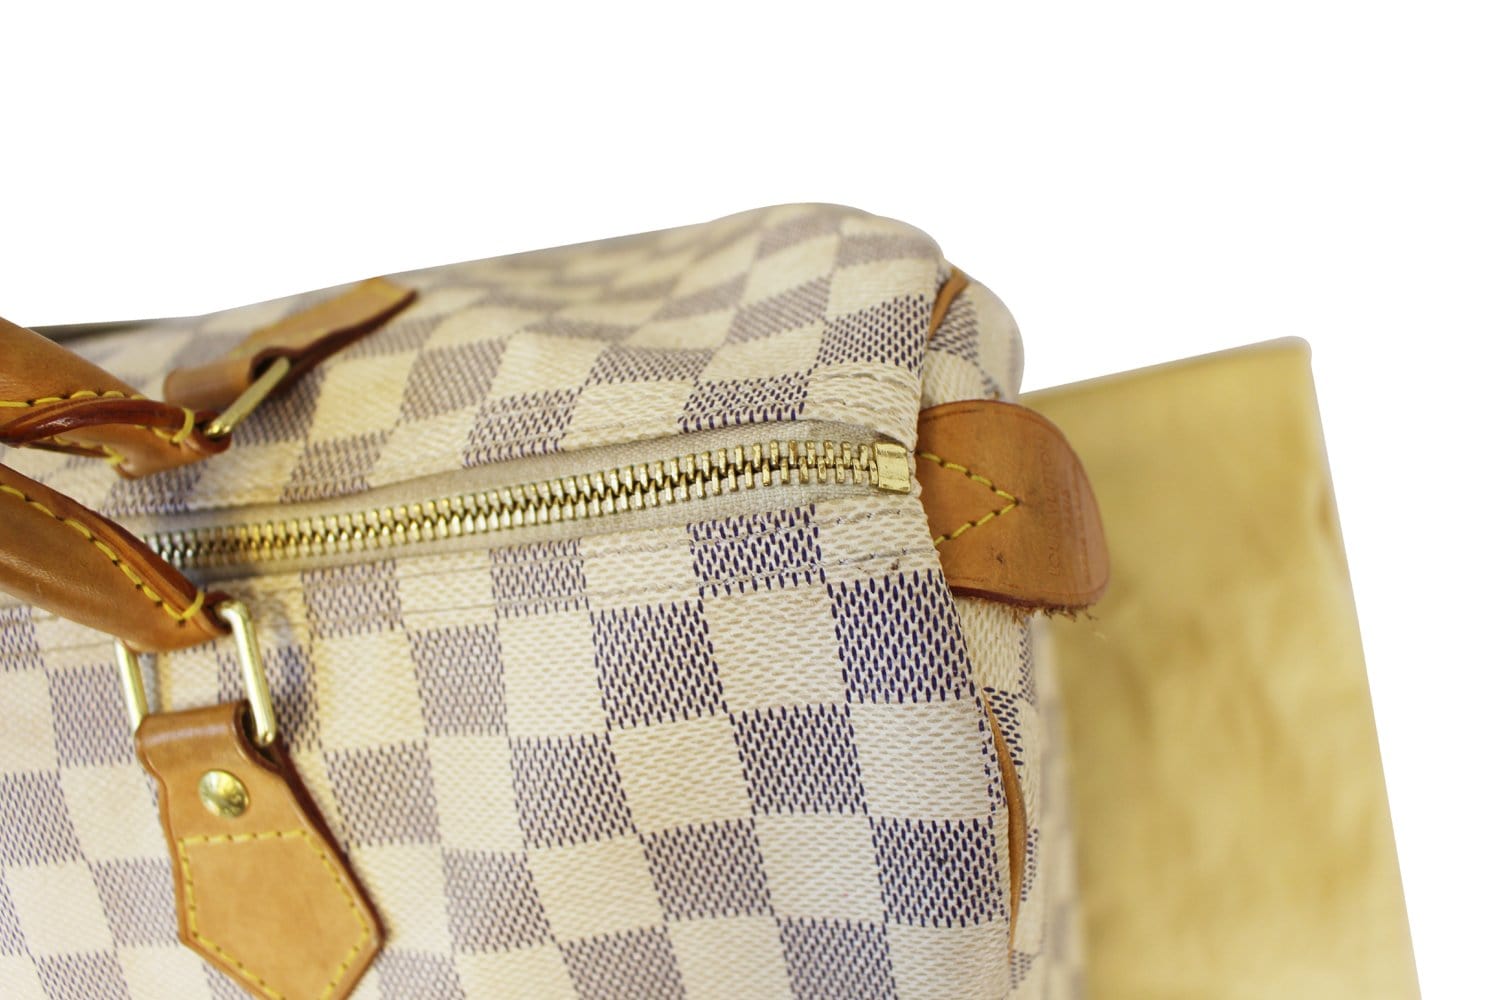 Handbags Louis Vuitton Louis Vuitton Damier Azur Speedy 35 Hand Bag N41535 LV Auth 31686a